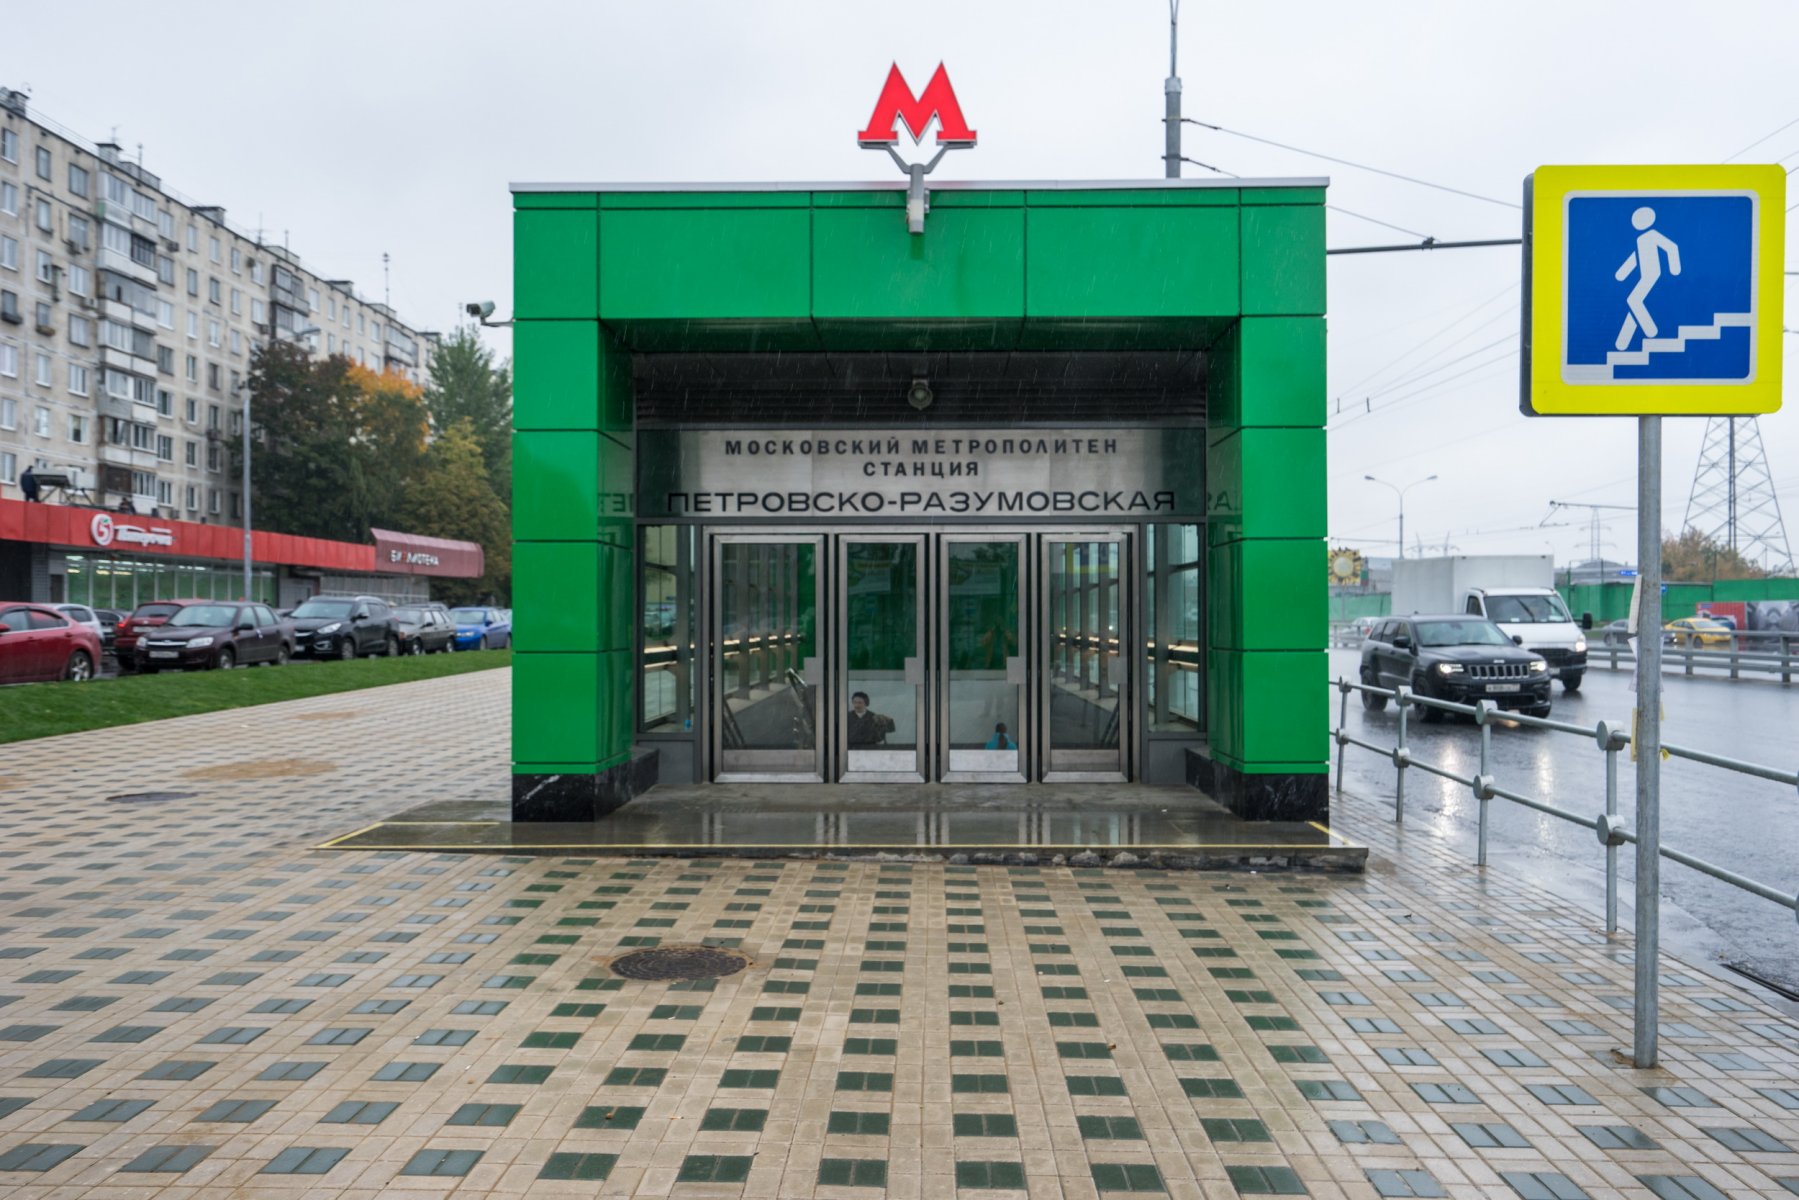 Тендеры февраля: 306 млн рублей на камеры биометрического контроля турникетного комплекса Московского метрополитена